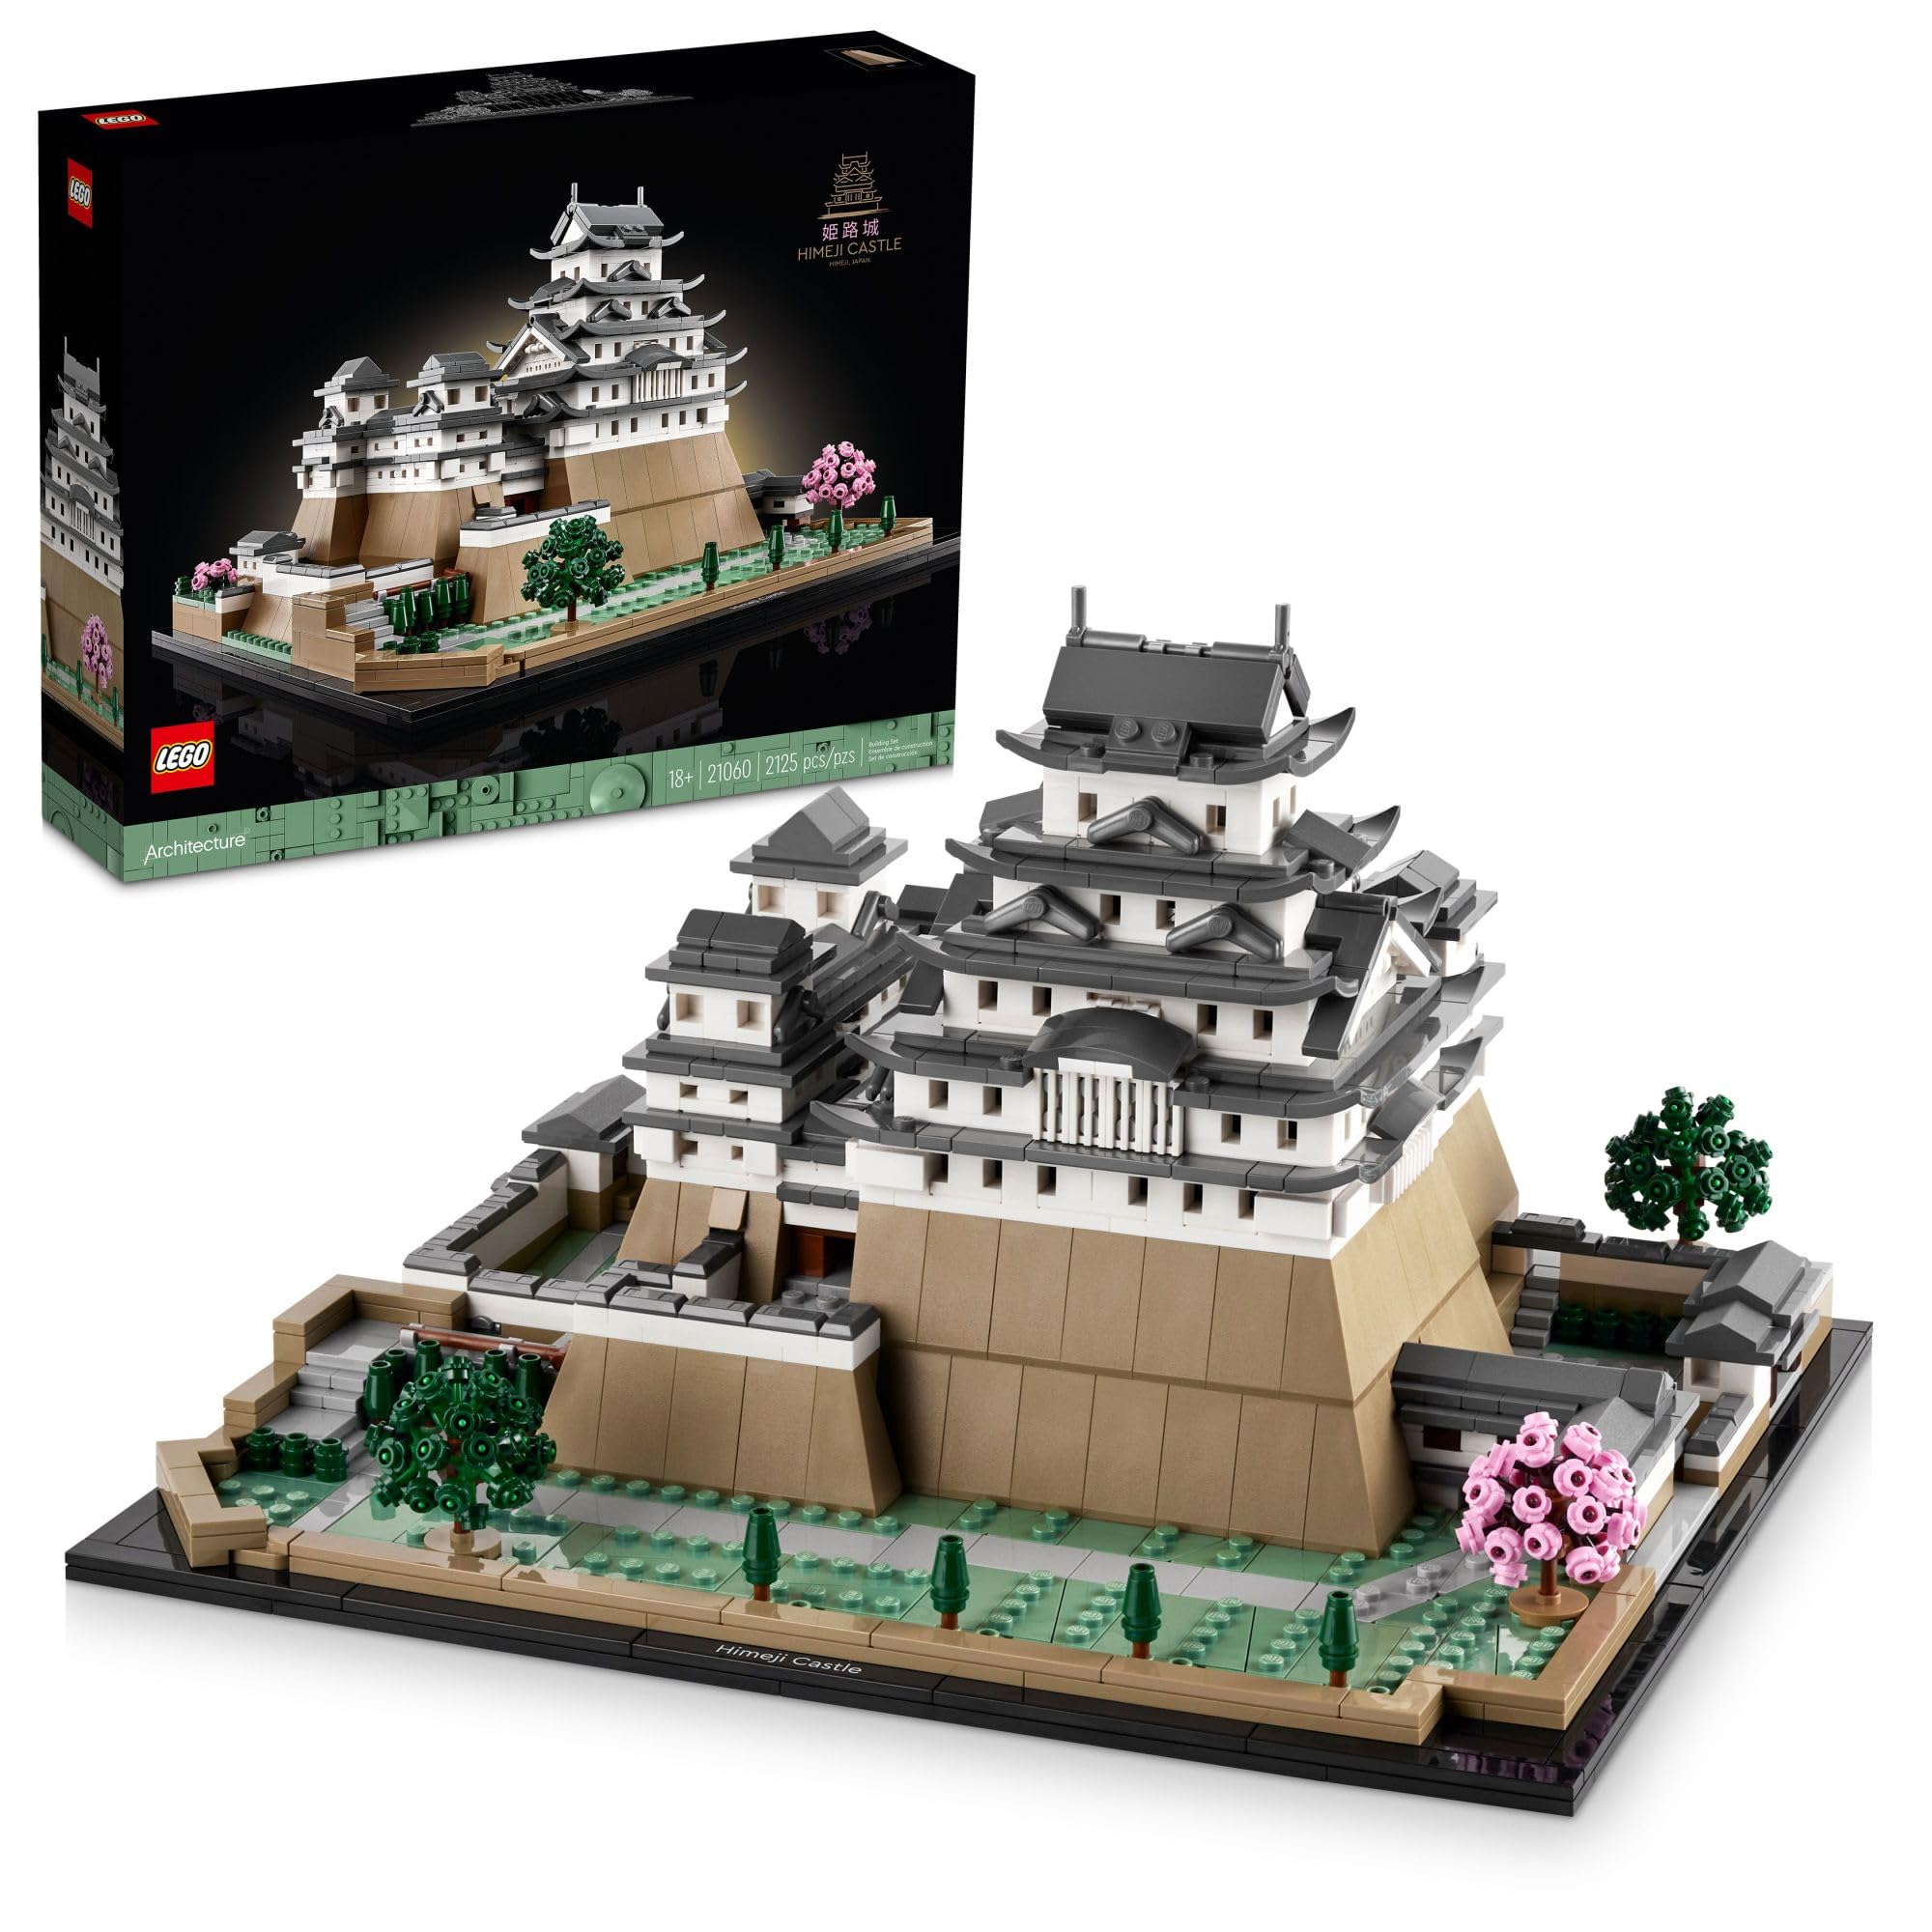 LEGO 建築ランドマークコレクション: 姫路城 21060 建物セット、大人向けのコレクションモデルを組み立...